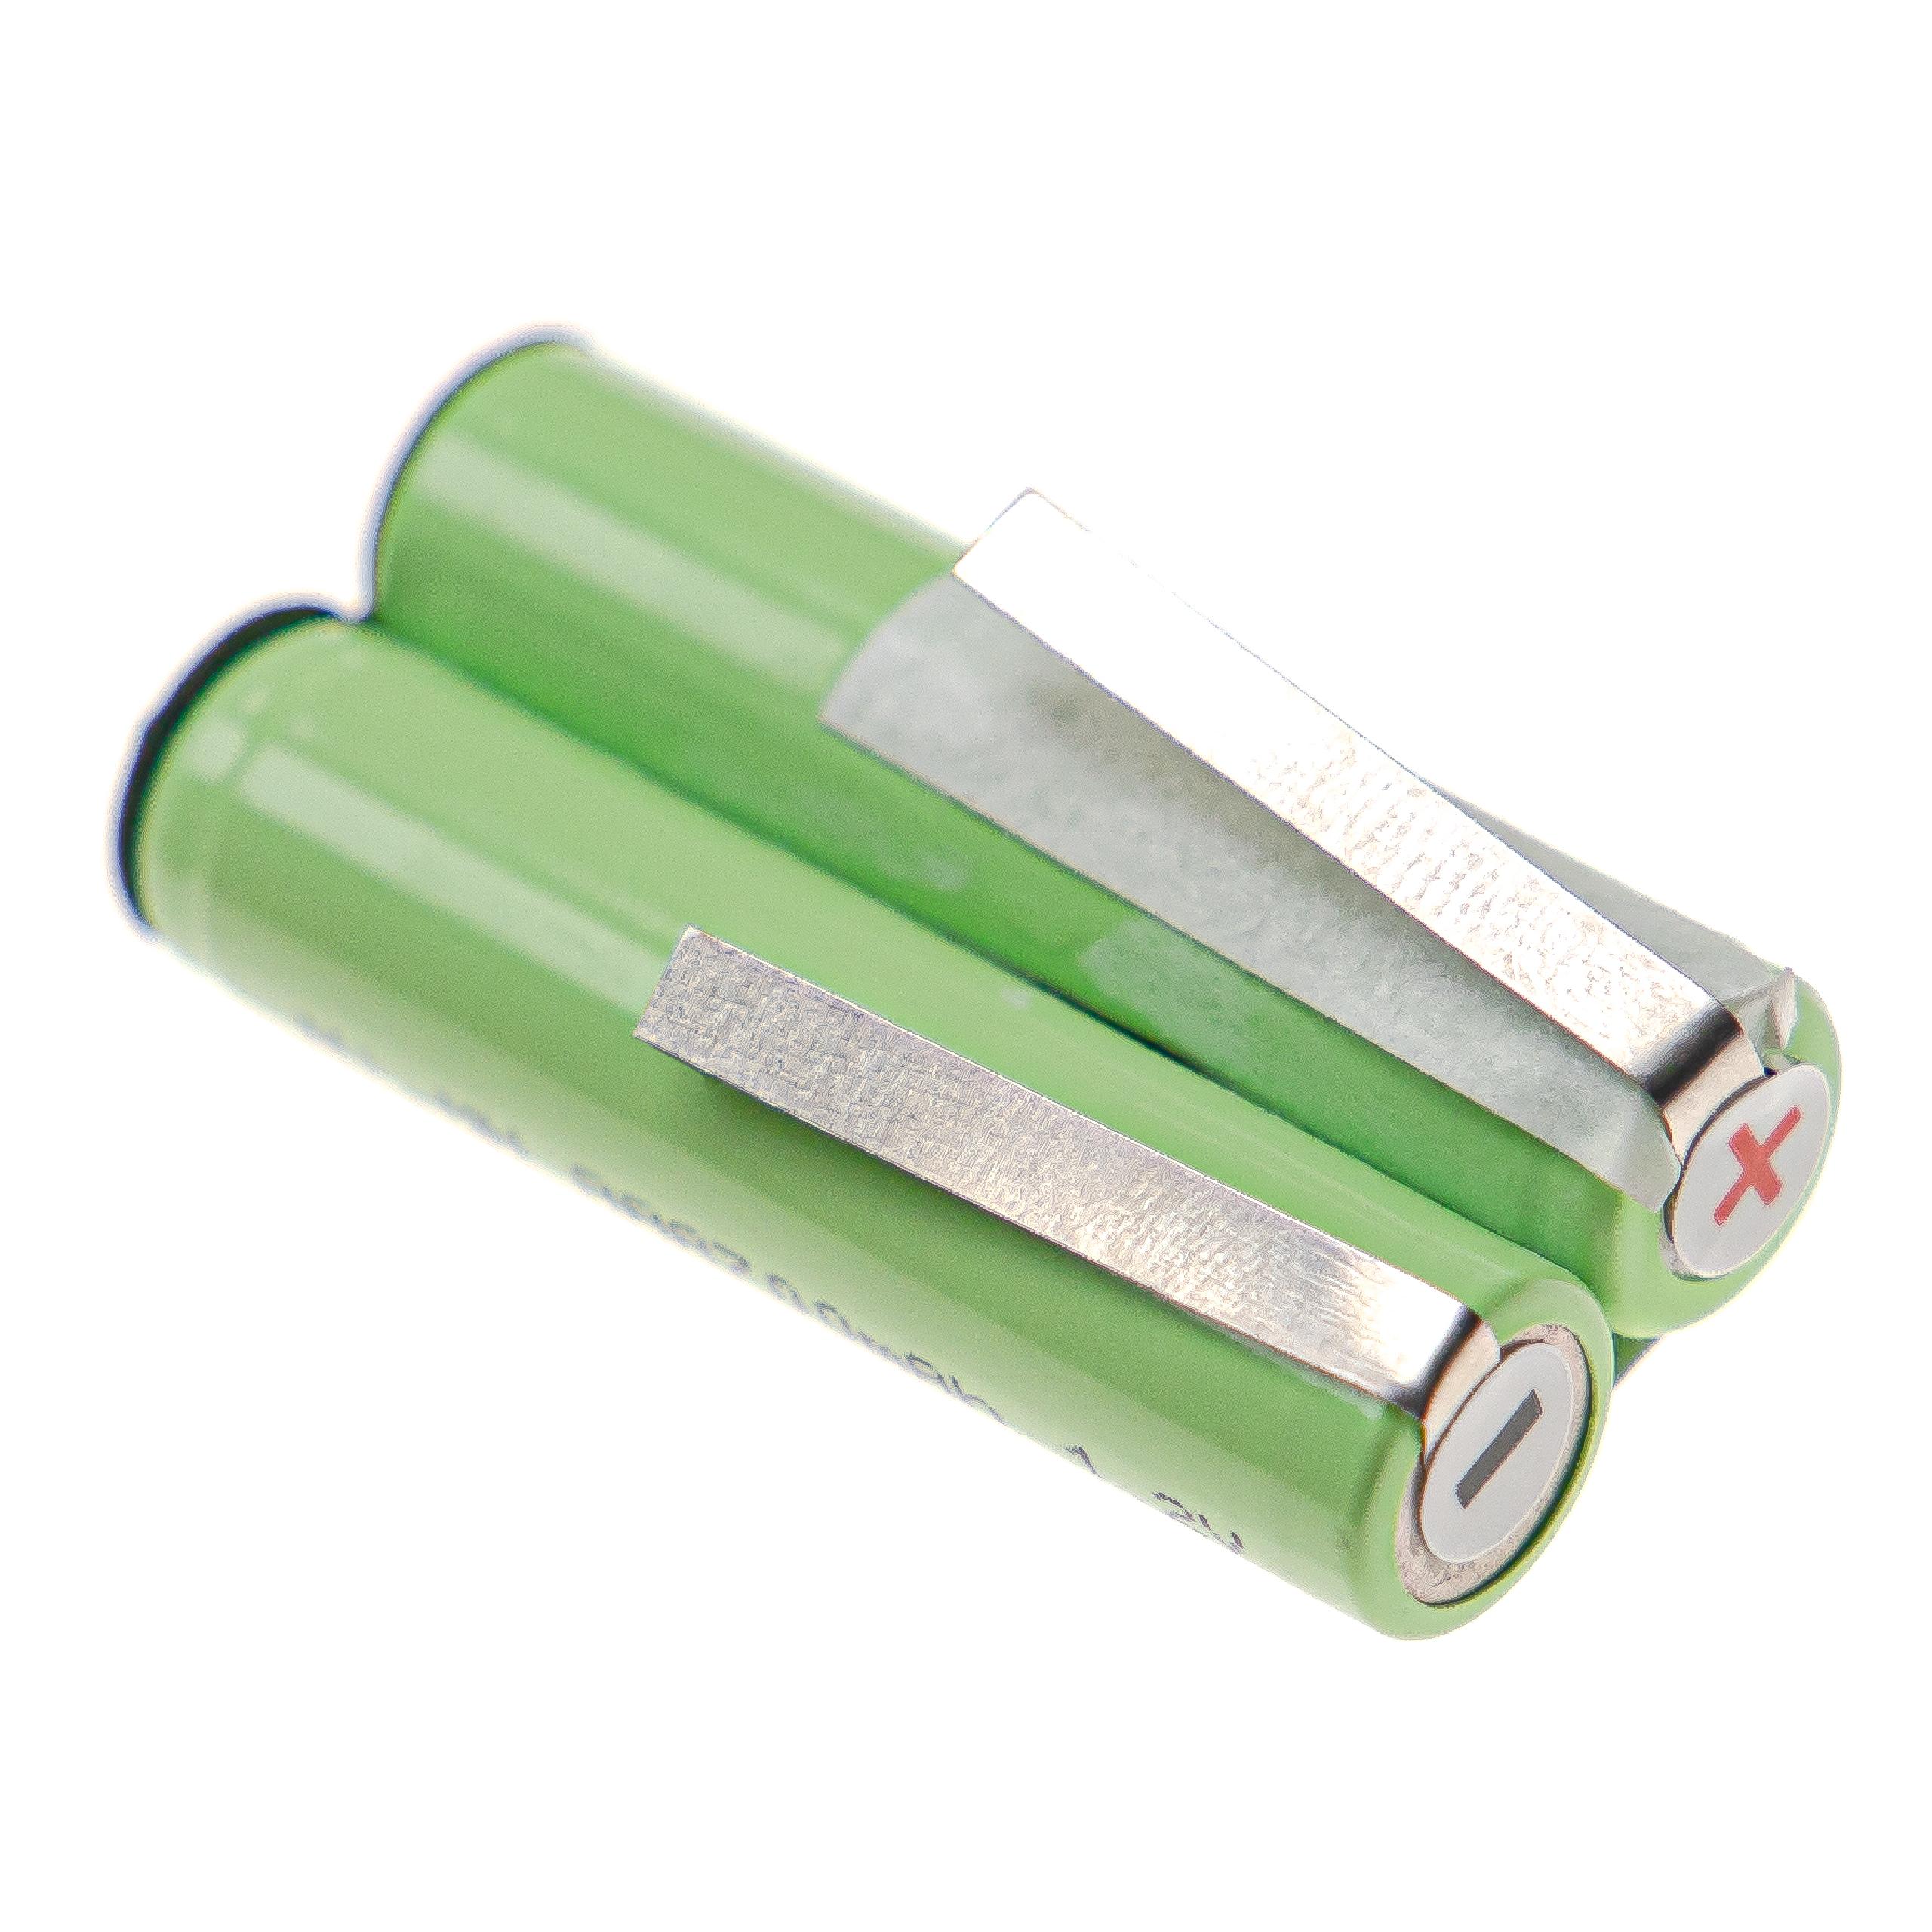 Batterie remplace Waterpik BK-4MCCE pour brosse à dents - 700mAh 2,4V NiMH